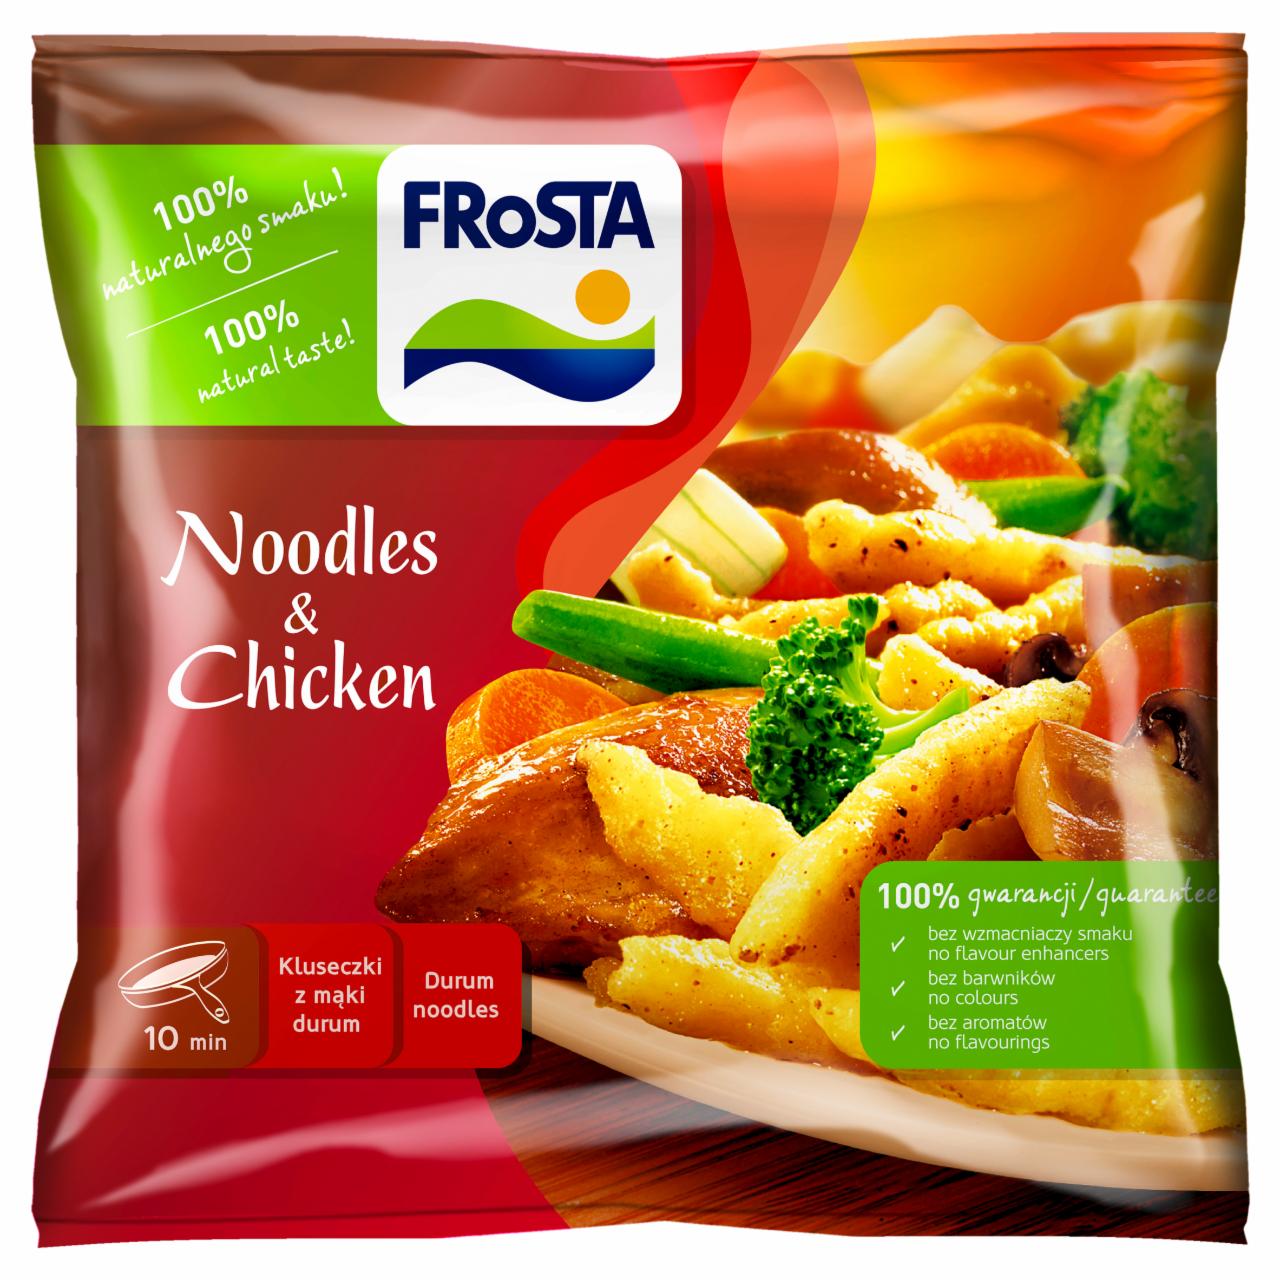 Zdjęcia - FRoSTA Noodles & Chicken Tradycyjne kluseczki szwajcarskie 500 g